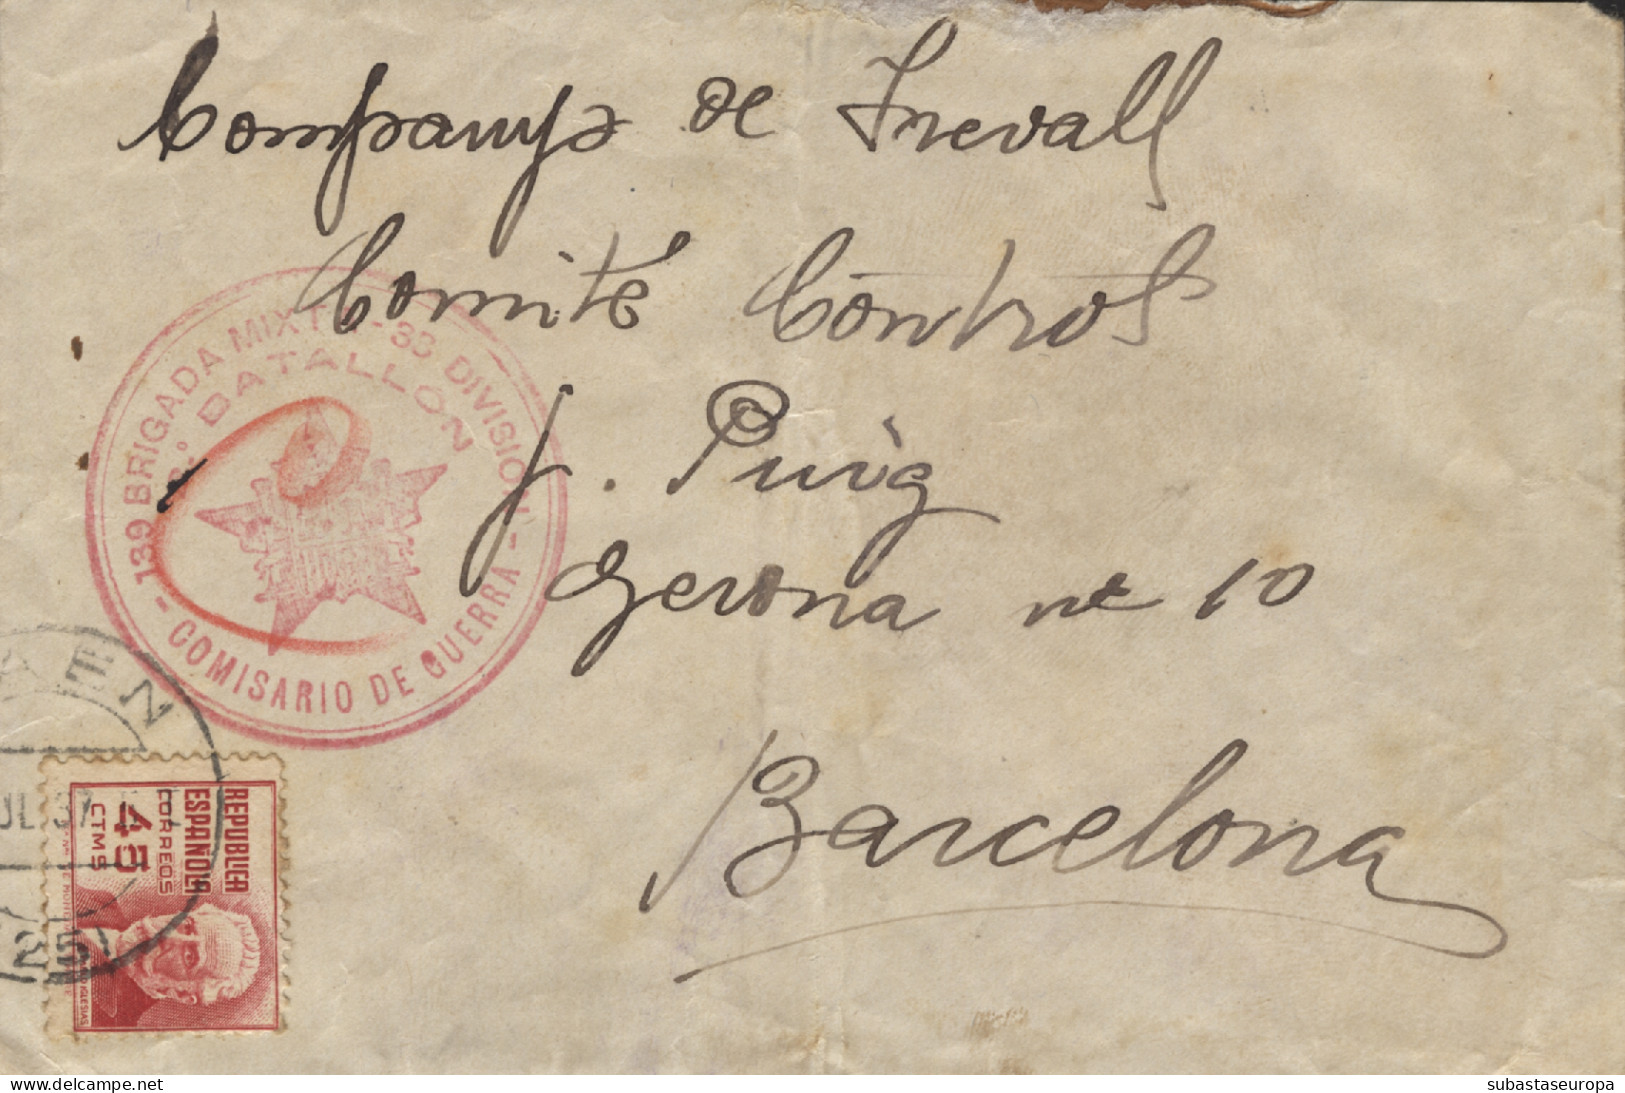 Carta Circulada Desde Frailes (Jaén) A Barcelona, El Año 1937. Marca "139 Brigada Mixta - 33 División - 2 Bon"  - Republicans Censor Marks